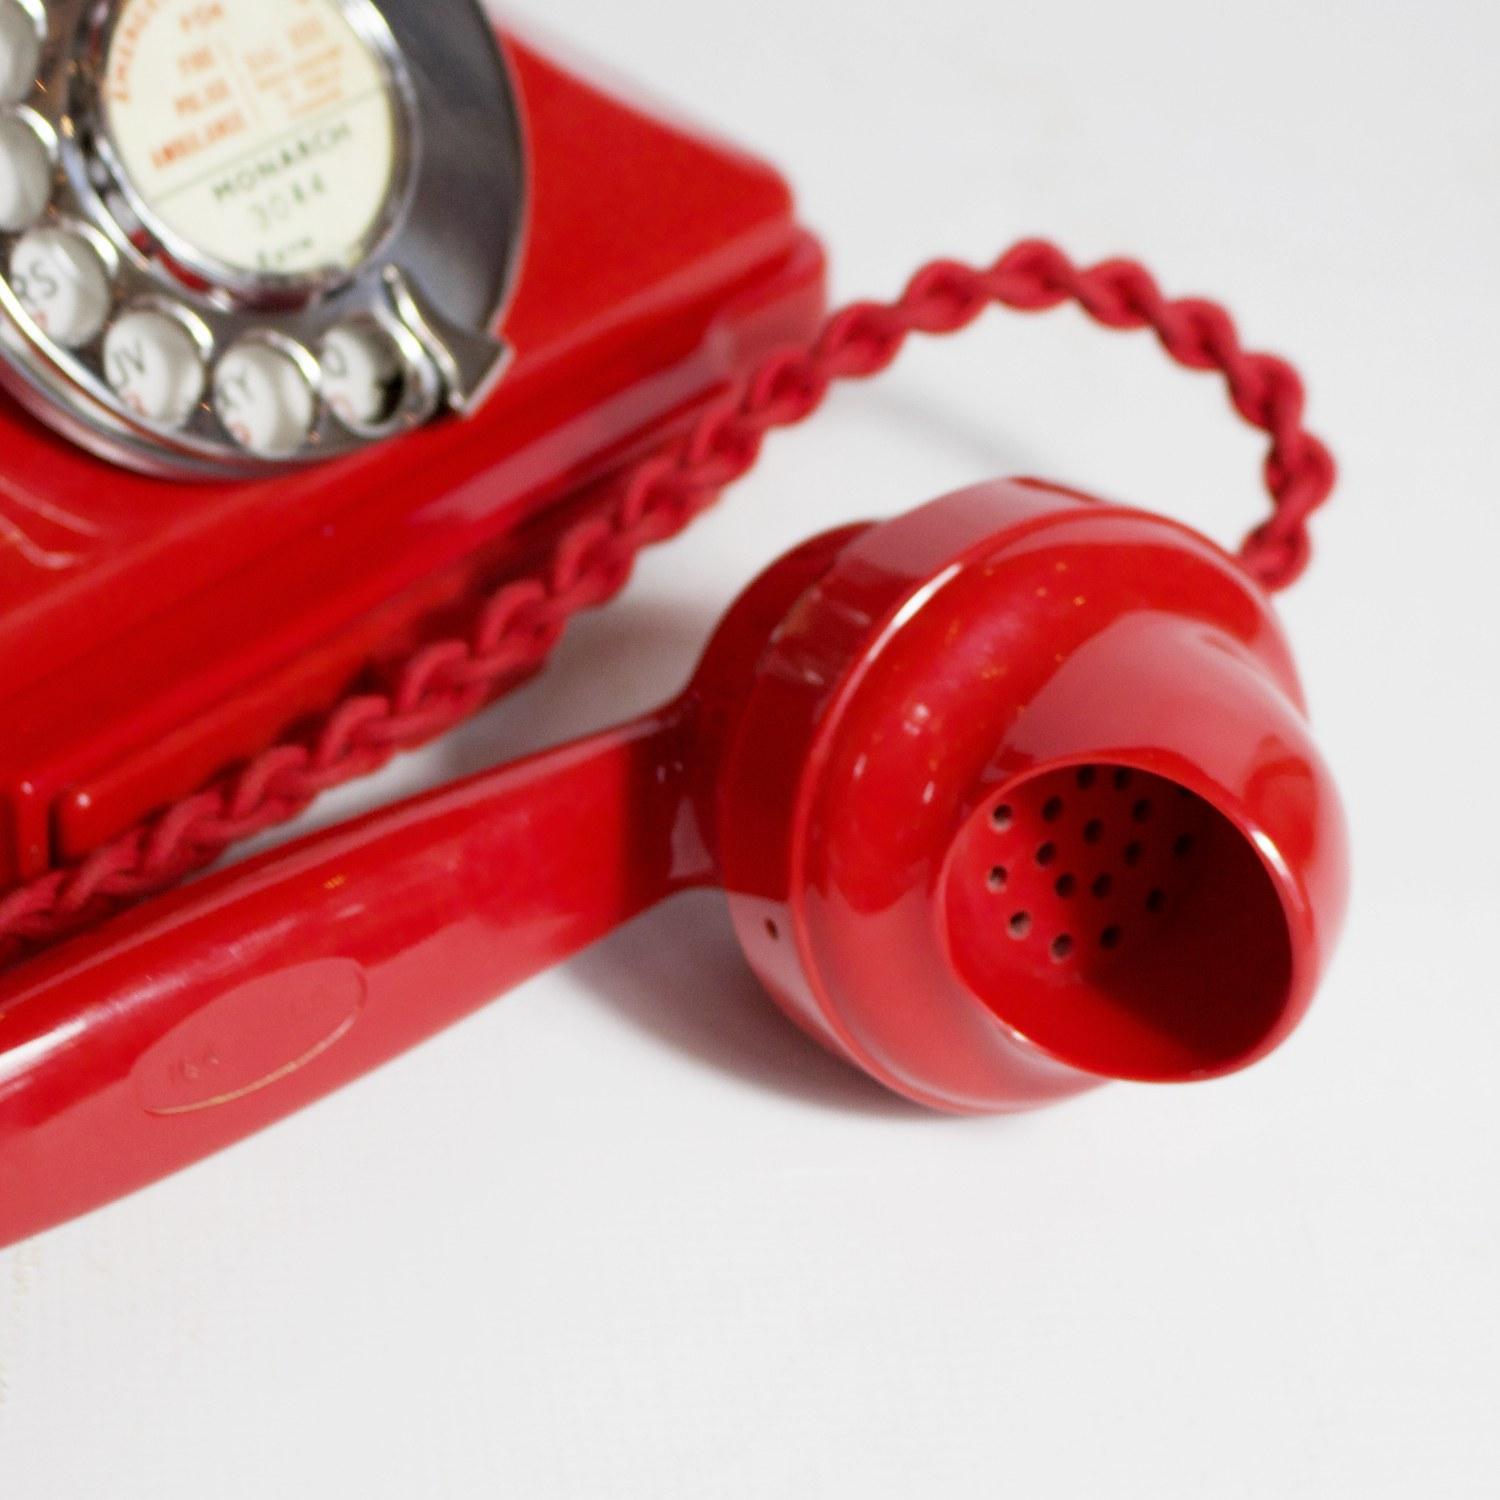 20th Century Original, Rare GPO Model 232 Chinese Red Bakelite Telephone, circa 1956